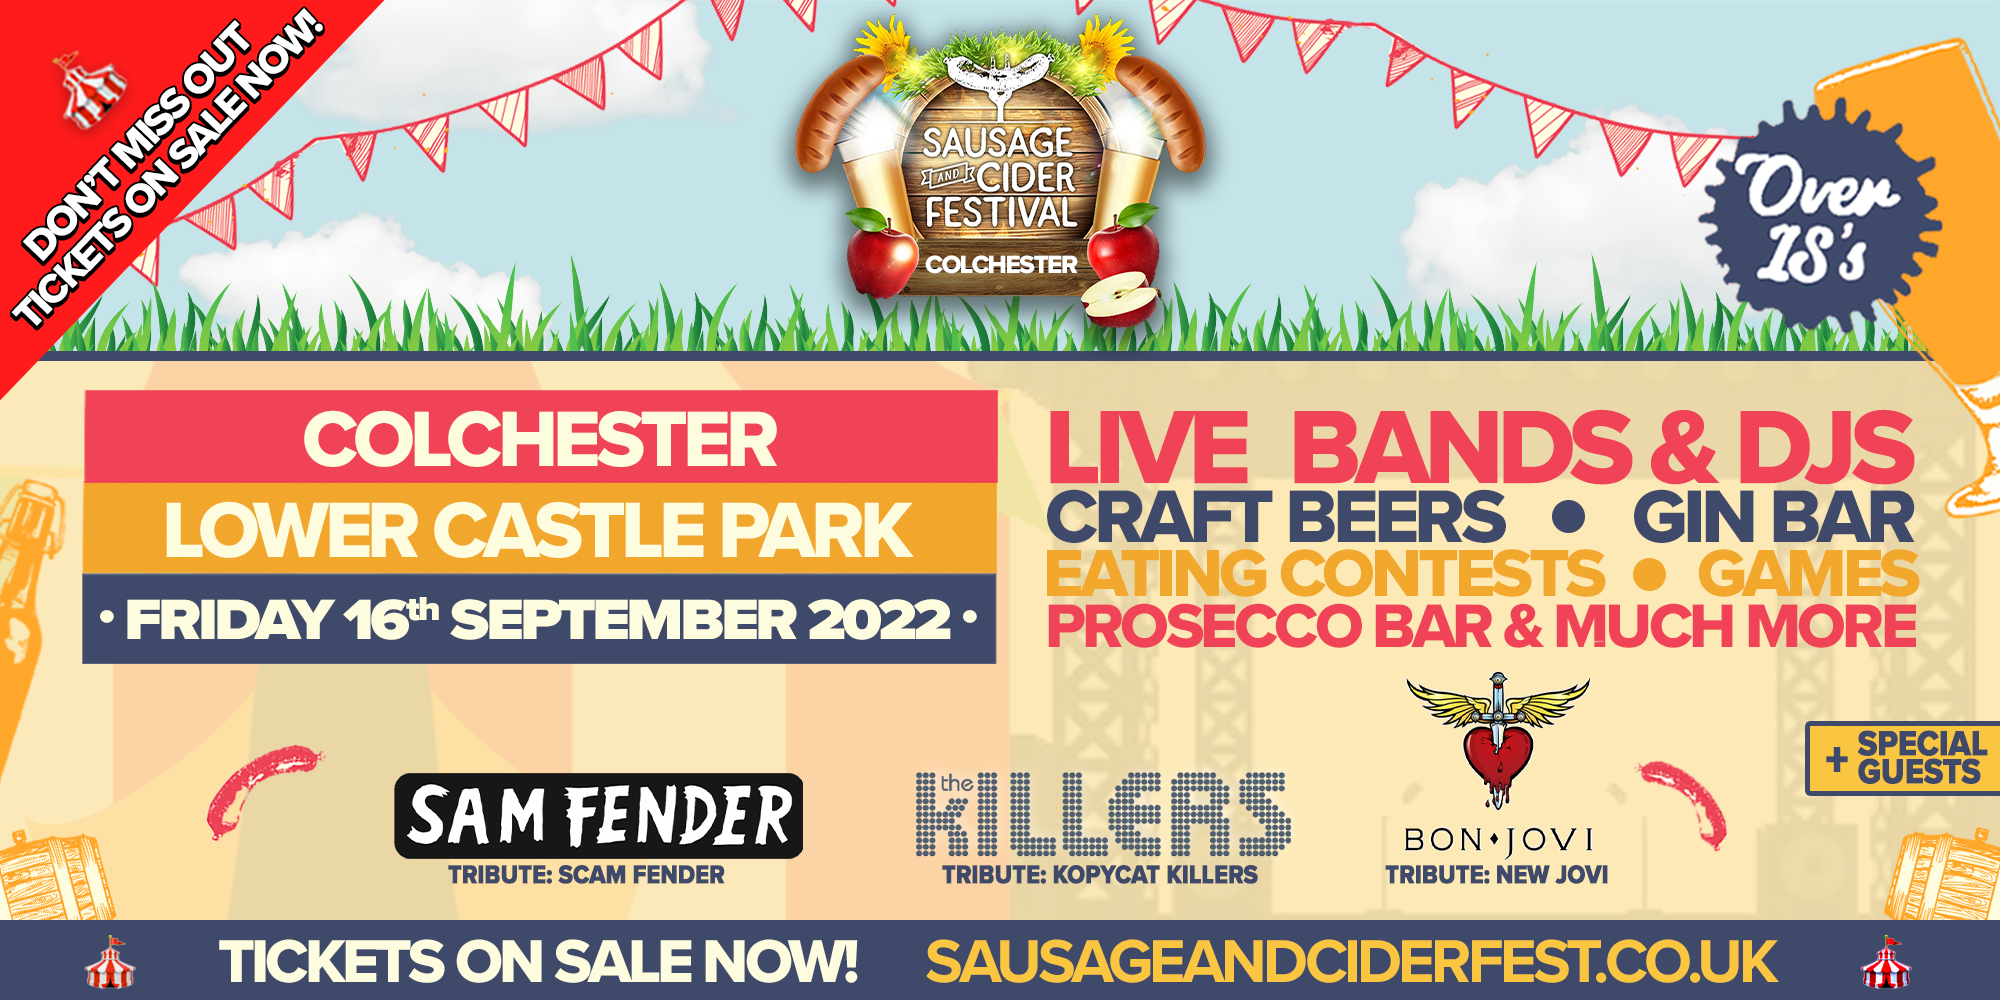 Sausage & Cider Fest - Colchester 2022